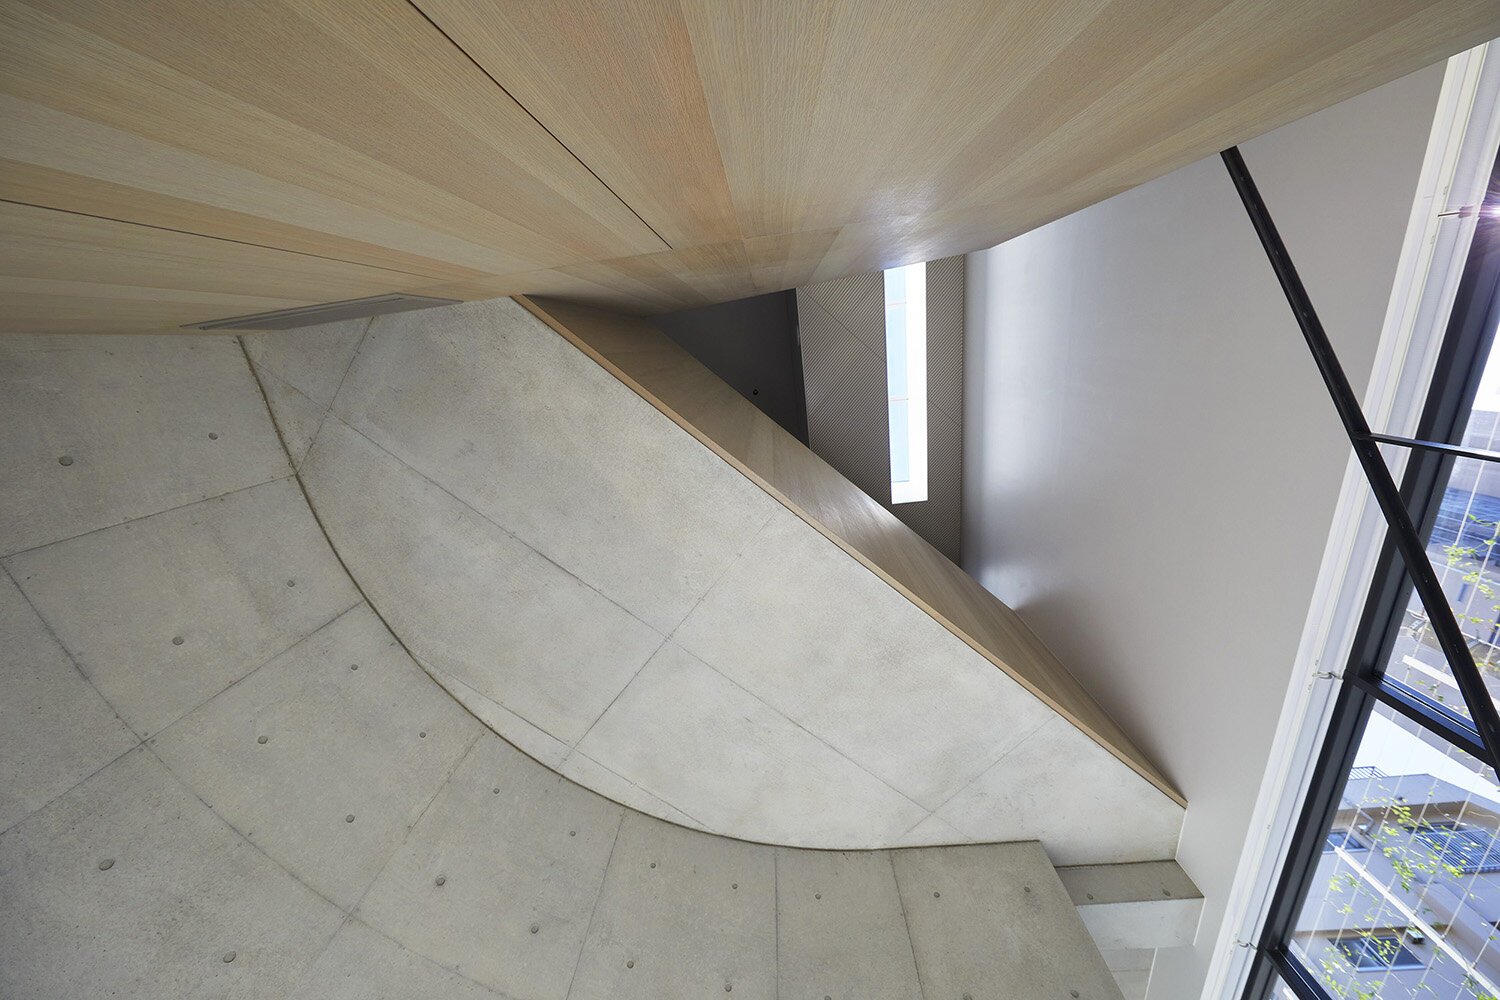  建築家 sinatoシナトの大野力が設計した住宅Shoto S。吹き抜けを見上げる 